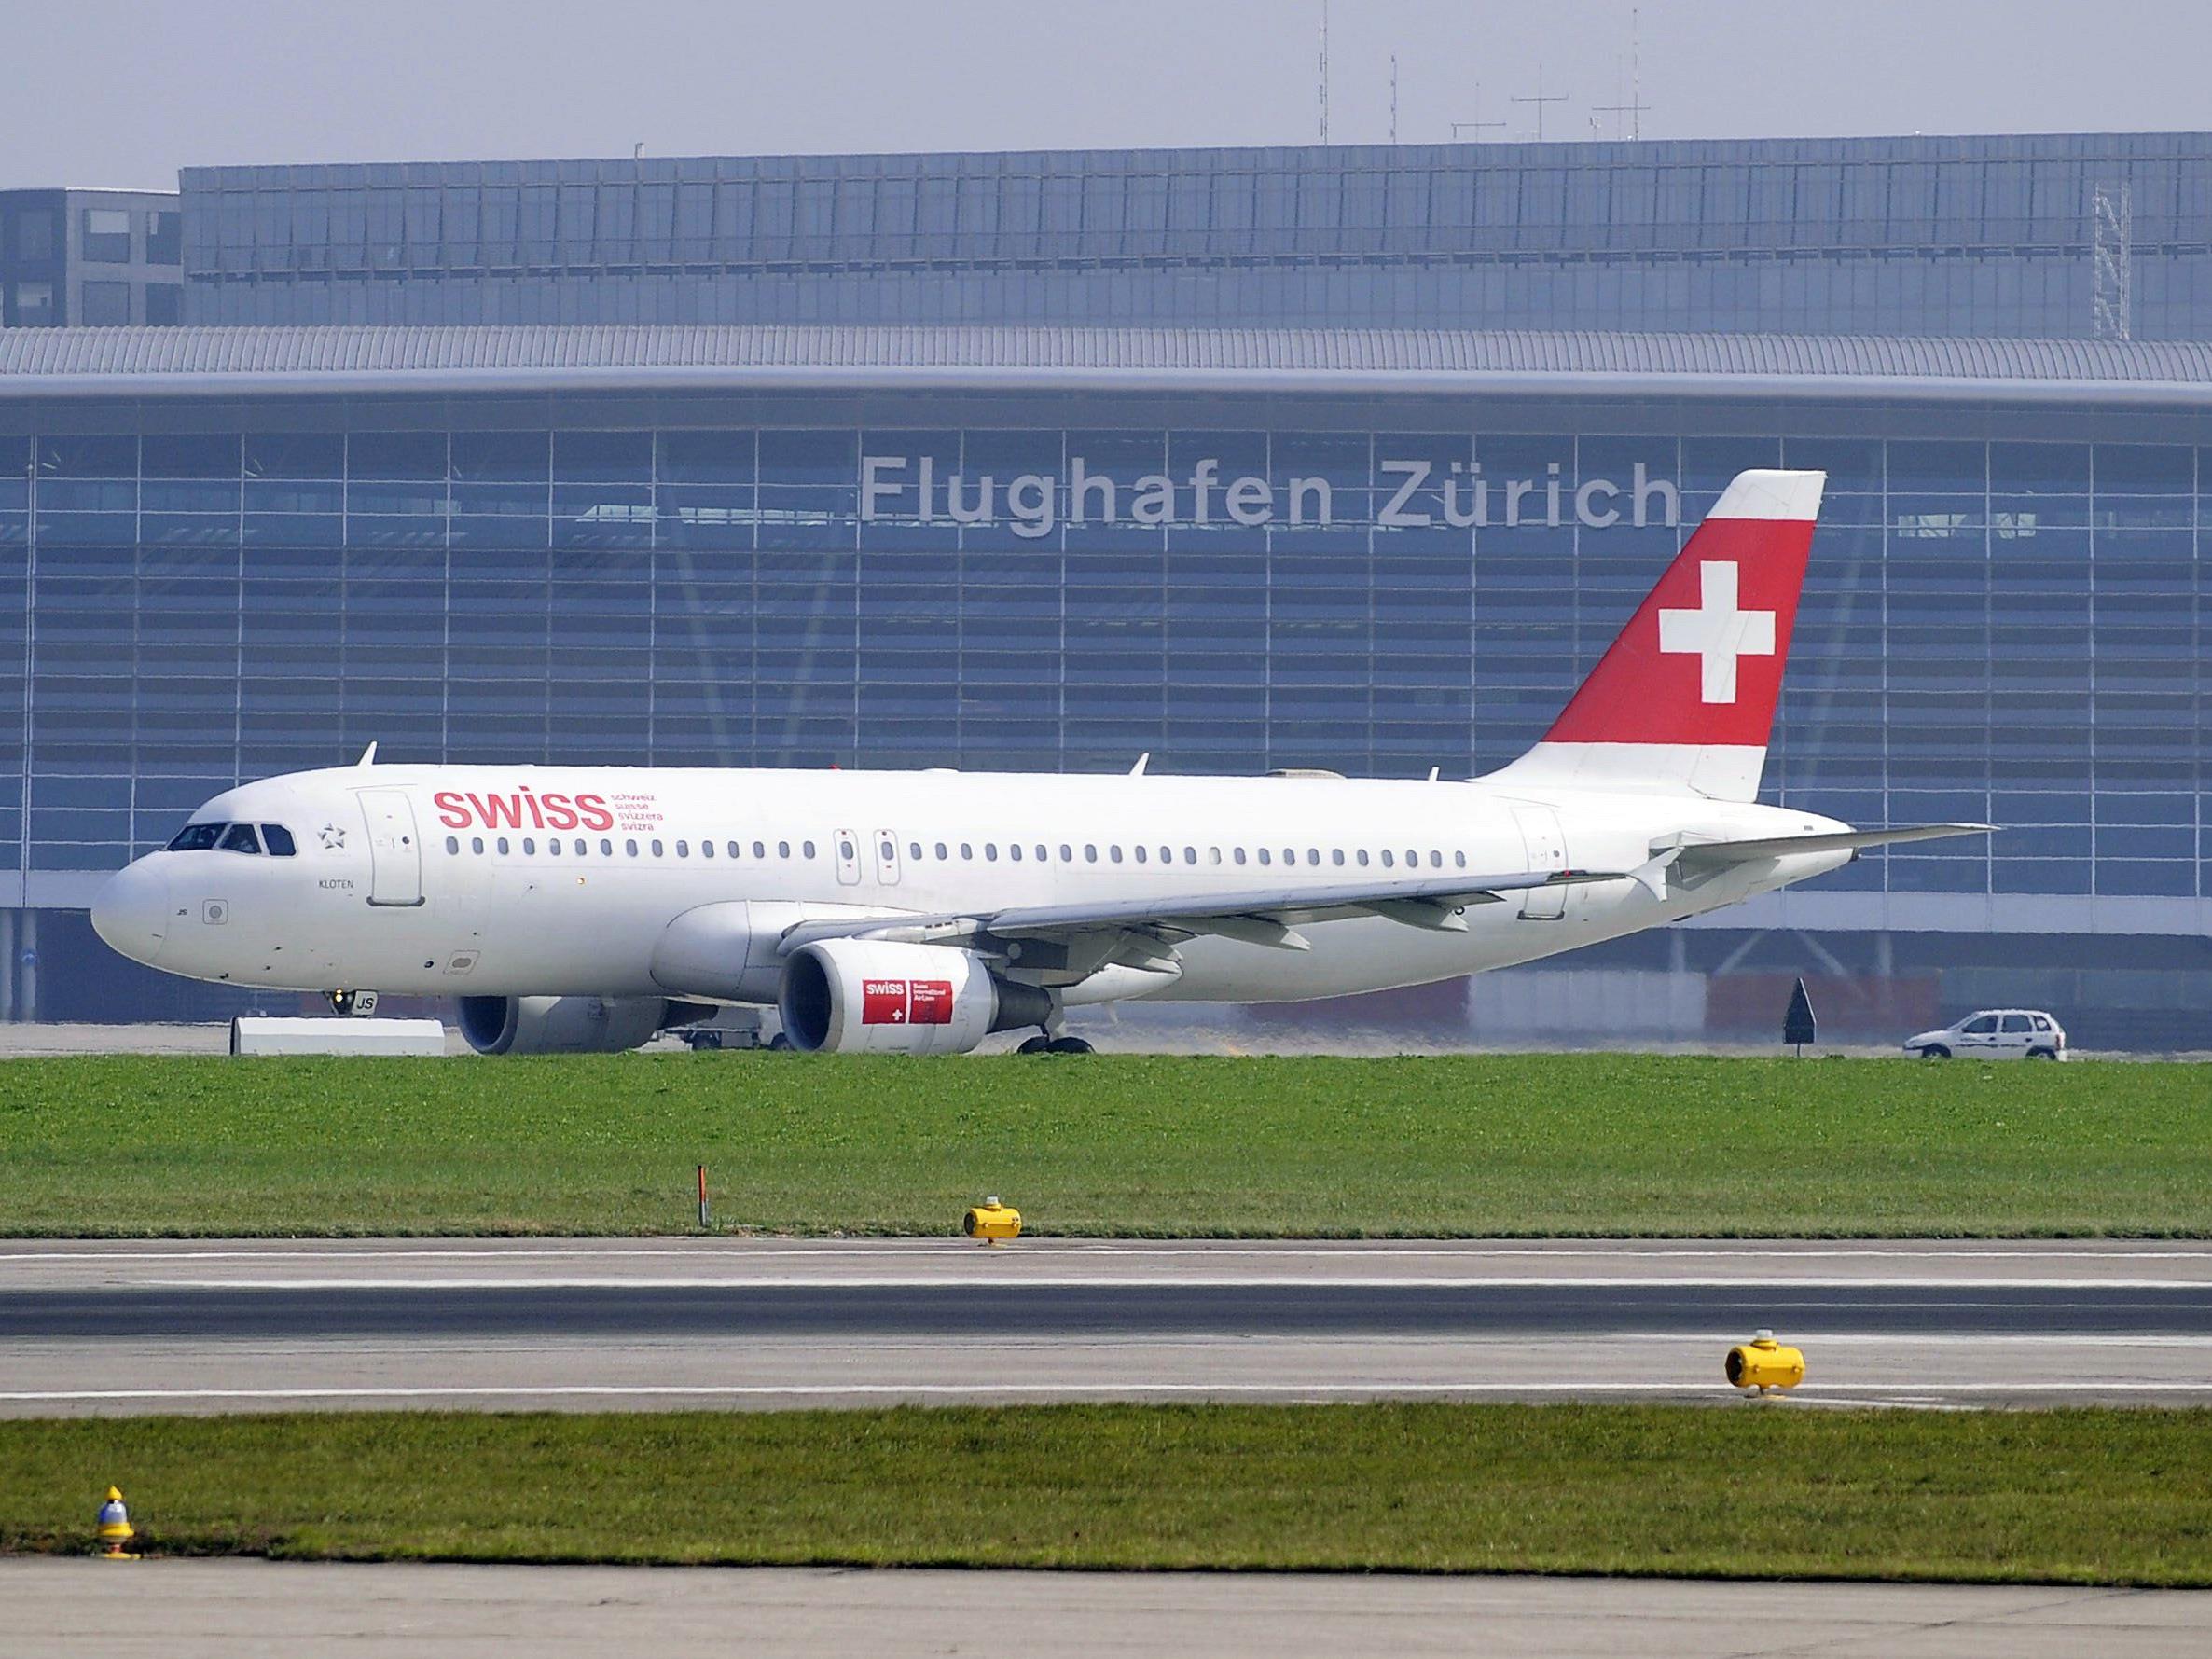 Flughafen Zürich nach Drohung kurzfristig gesperrt.